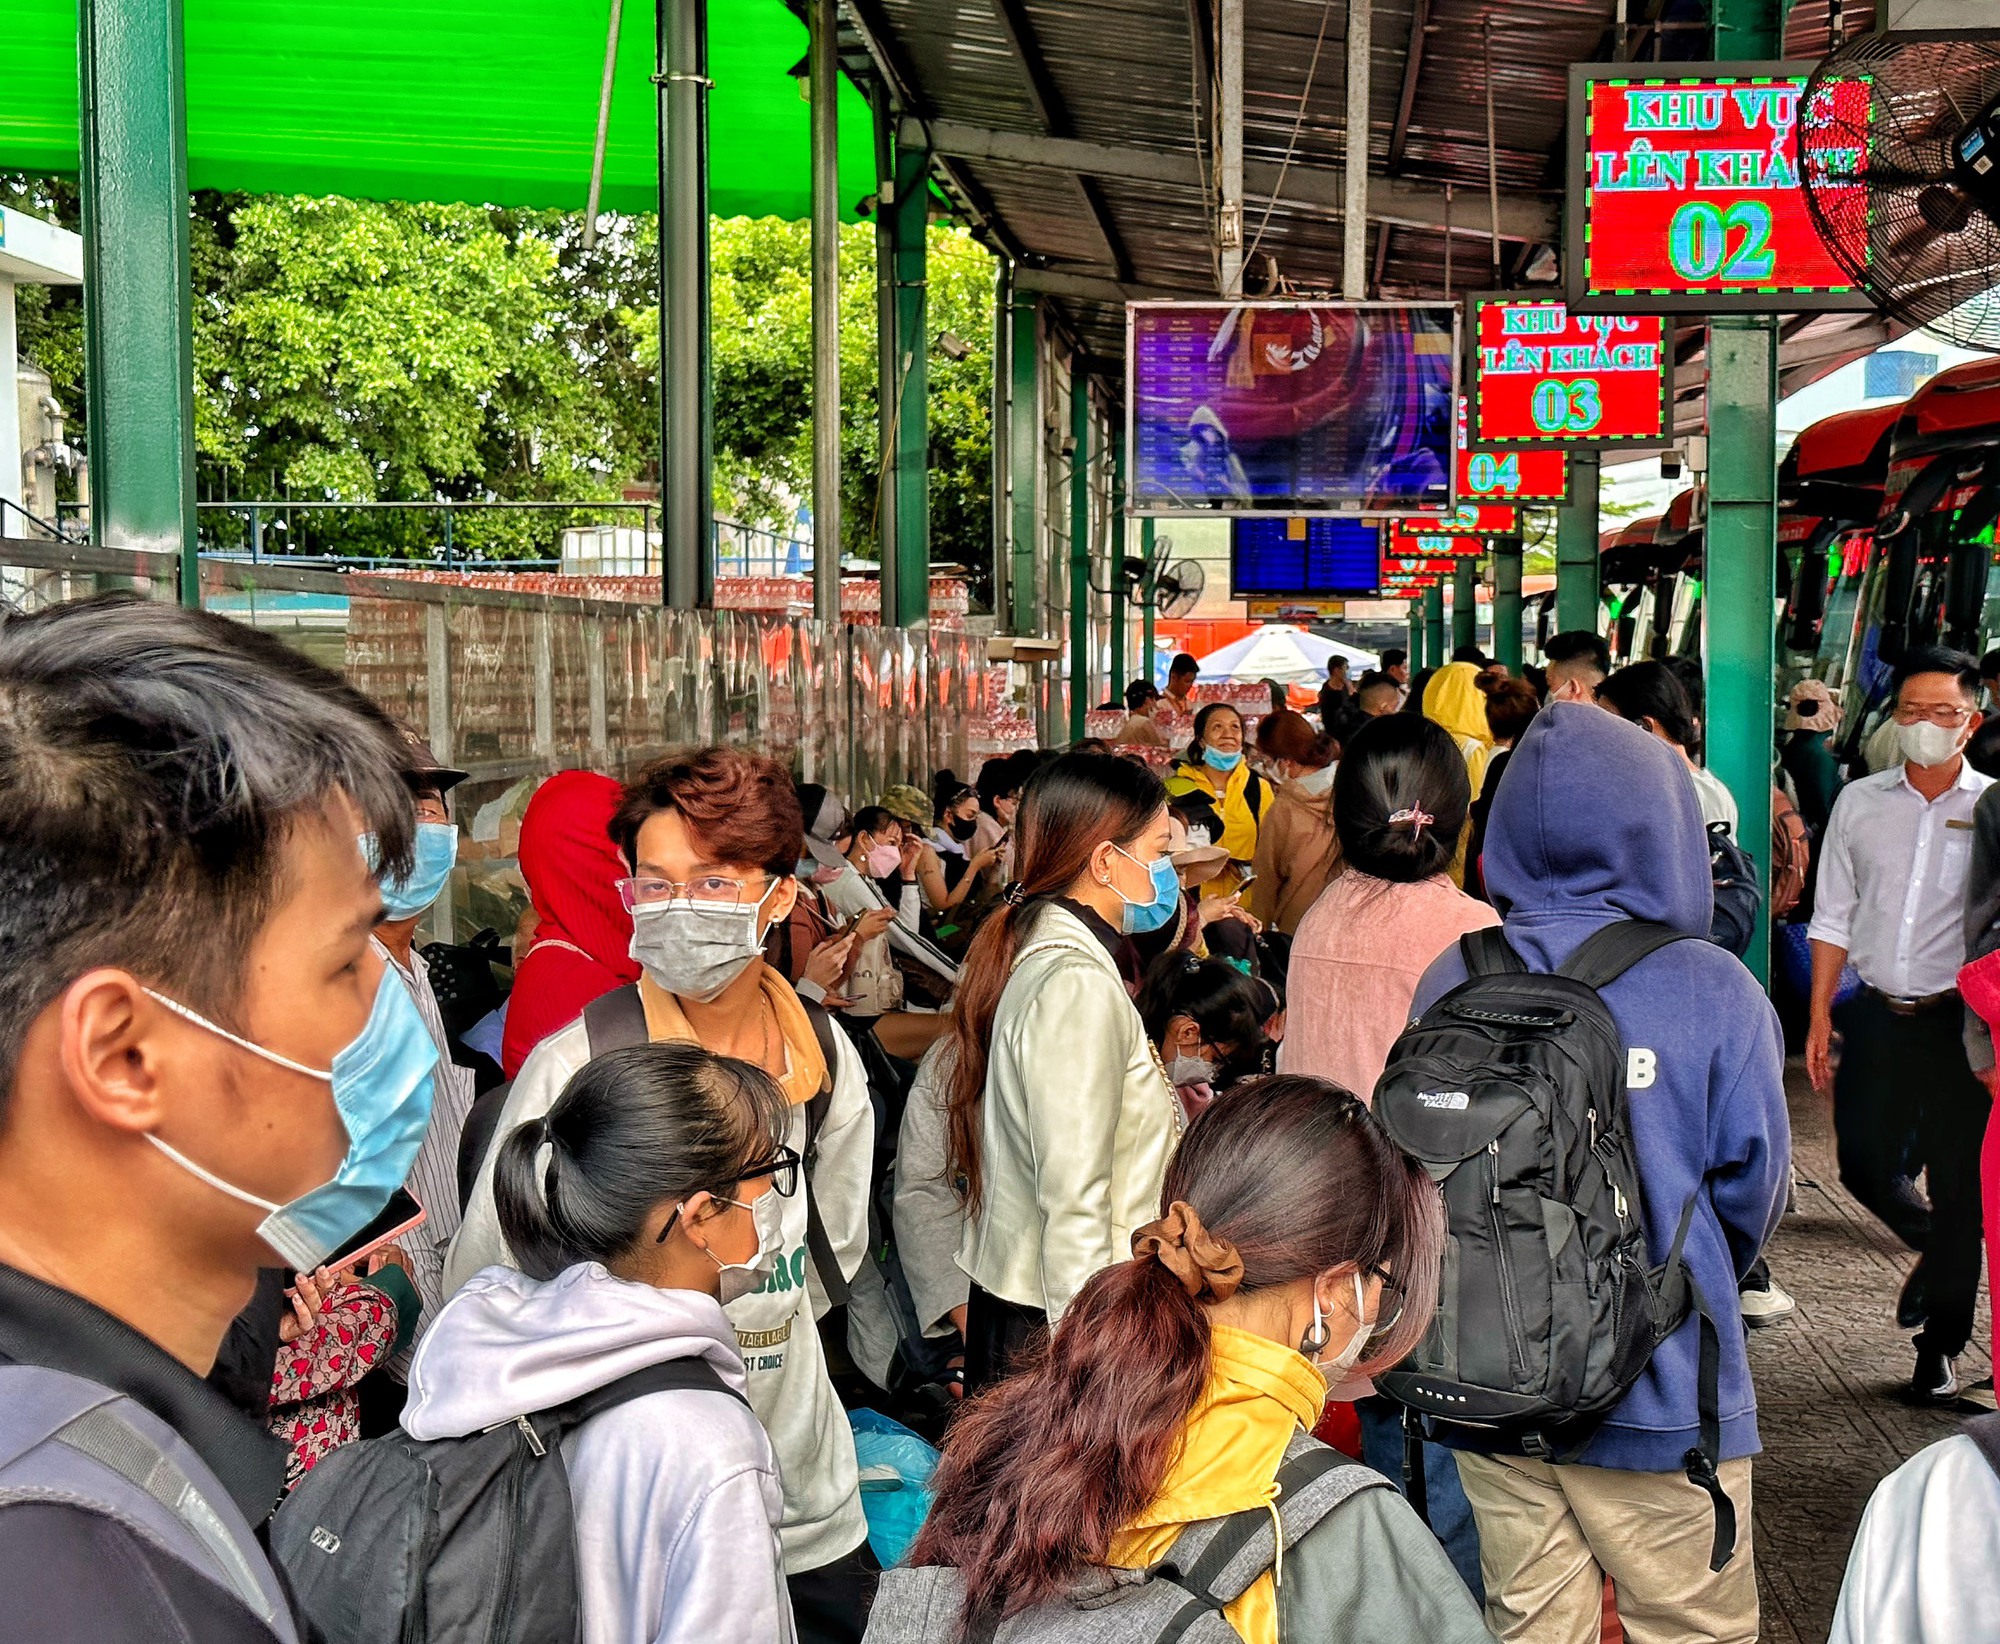 Về quê nghỉ lễ sớm: Sân bay Tân Sơn Nhất, bến xe bắt đầu nhộn nhịp - Ảnh 5.